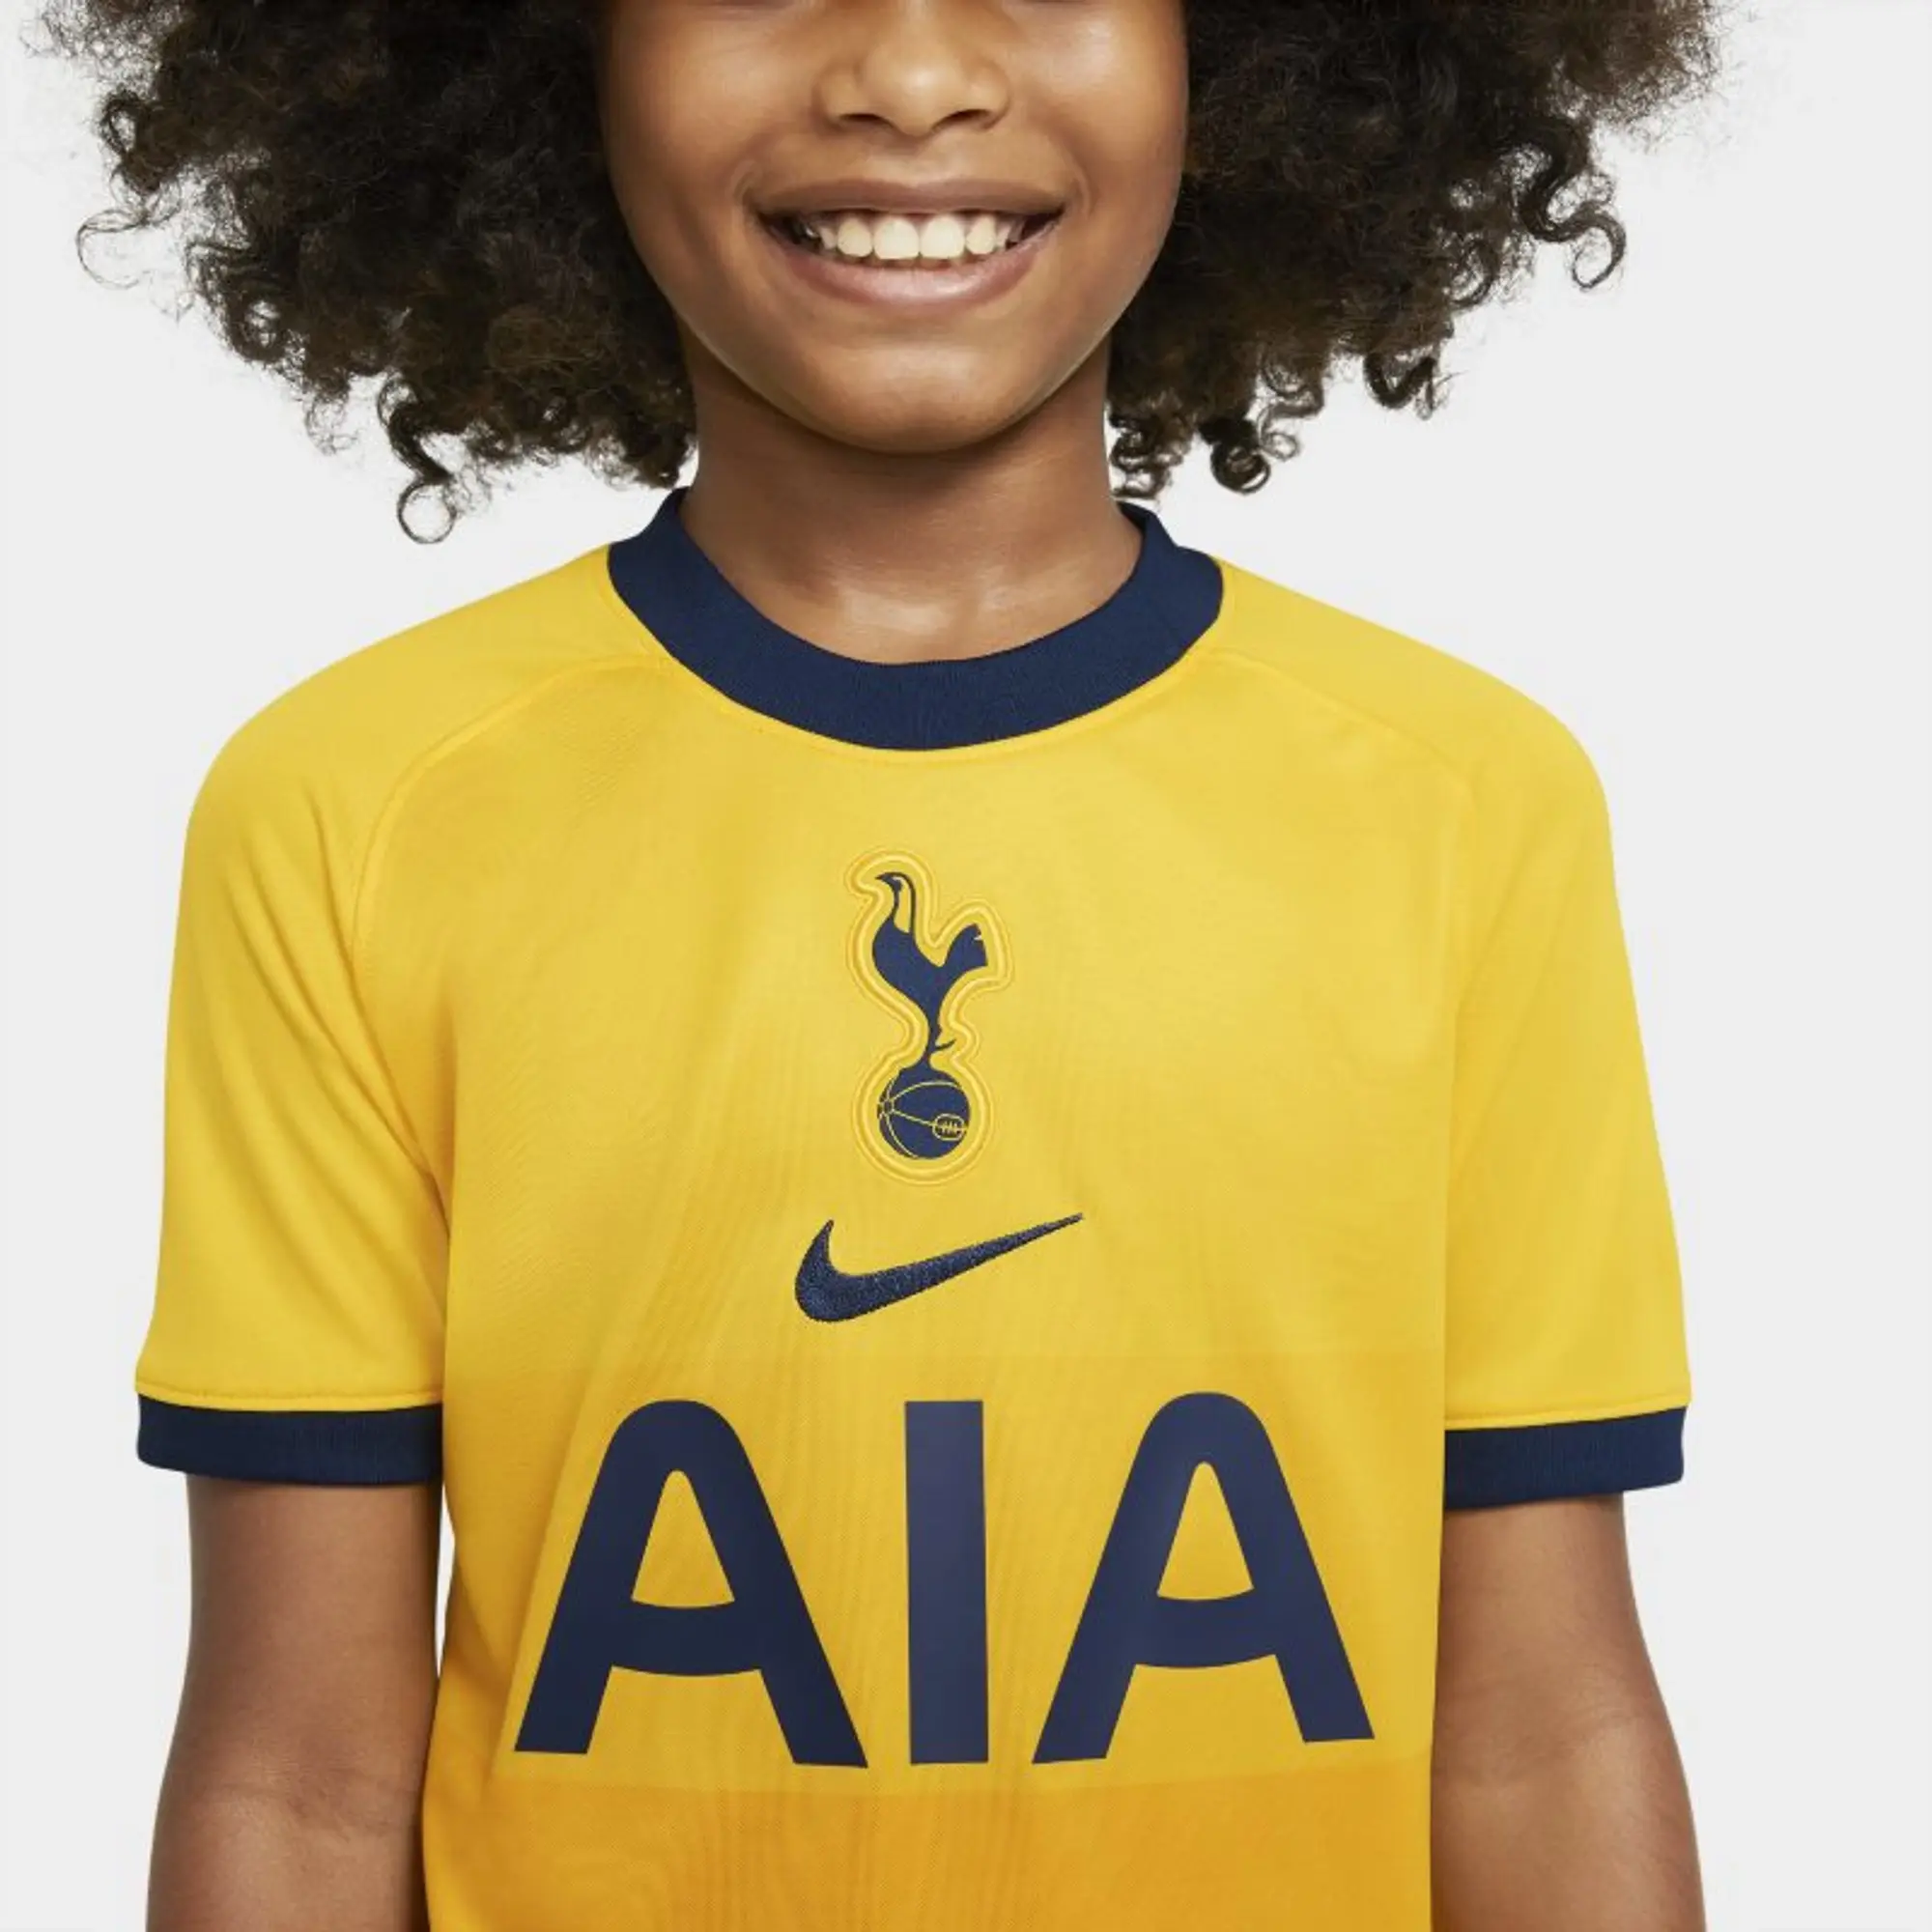 Tottenham Hotspur 2020-21 Home Kit